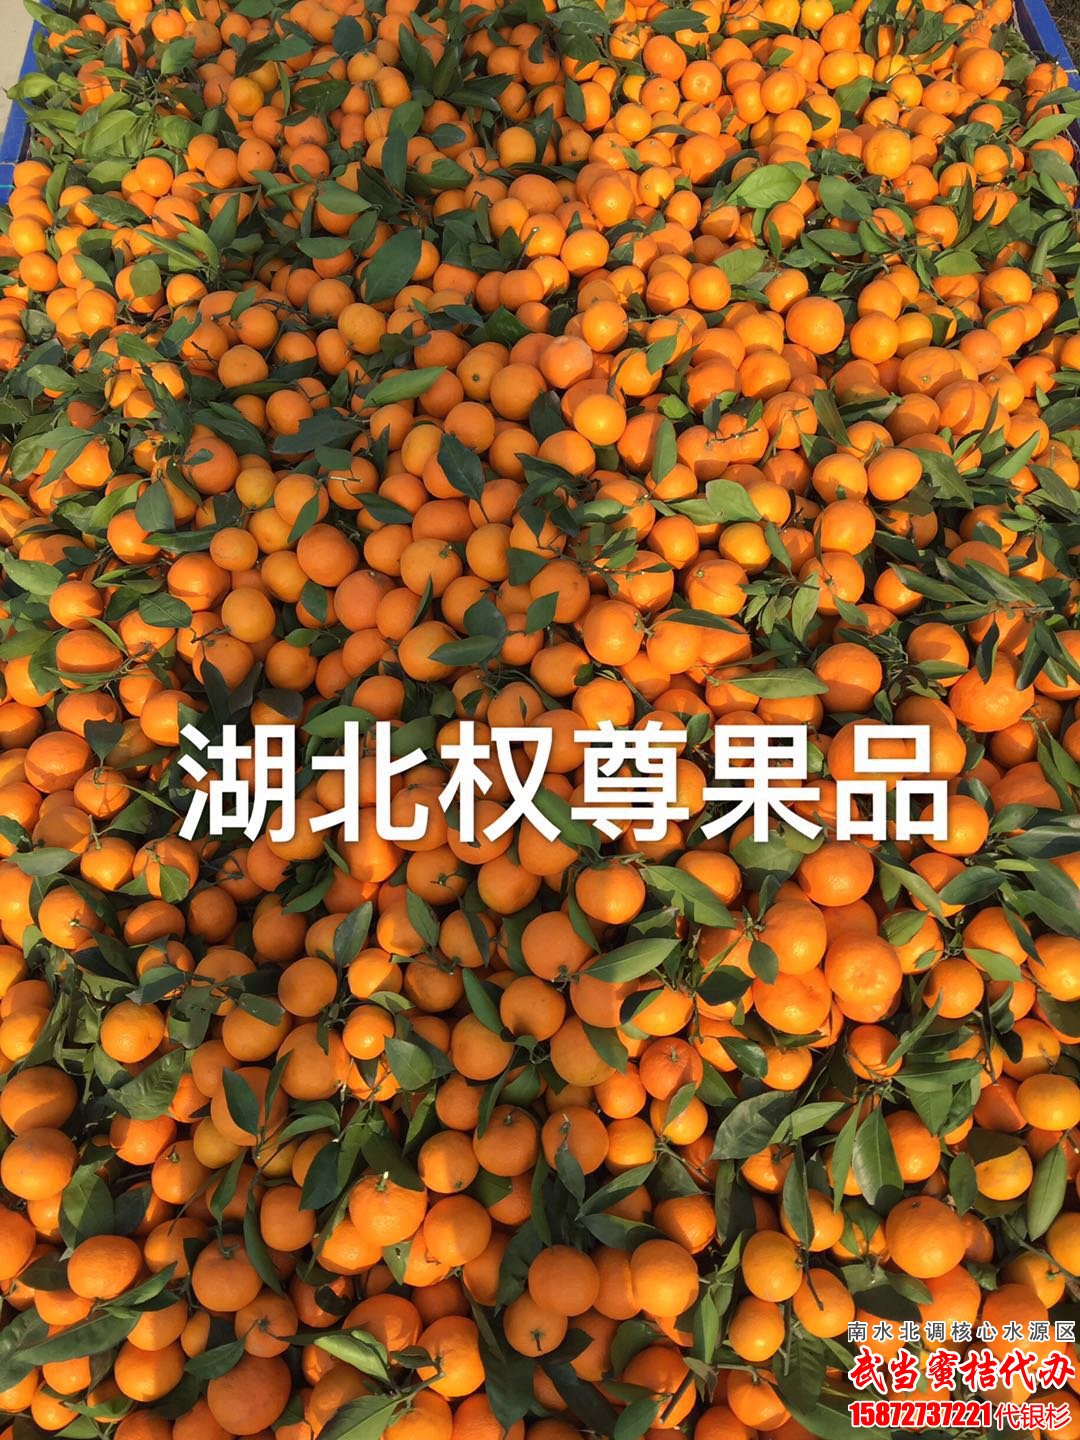 武当柑橘|武当蜜橘|武当蜜桔